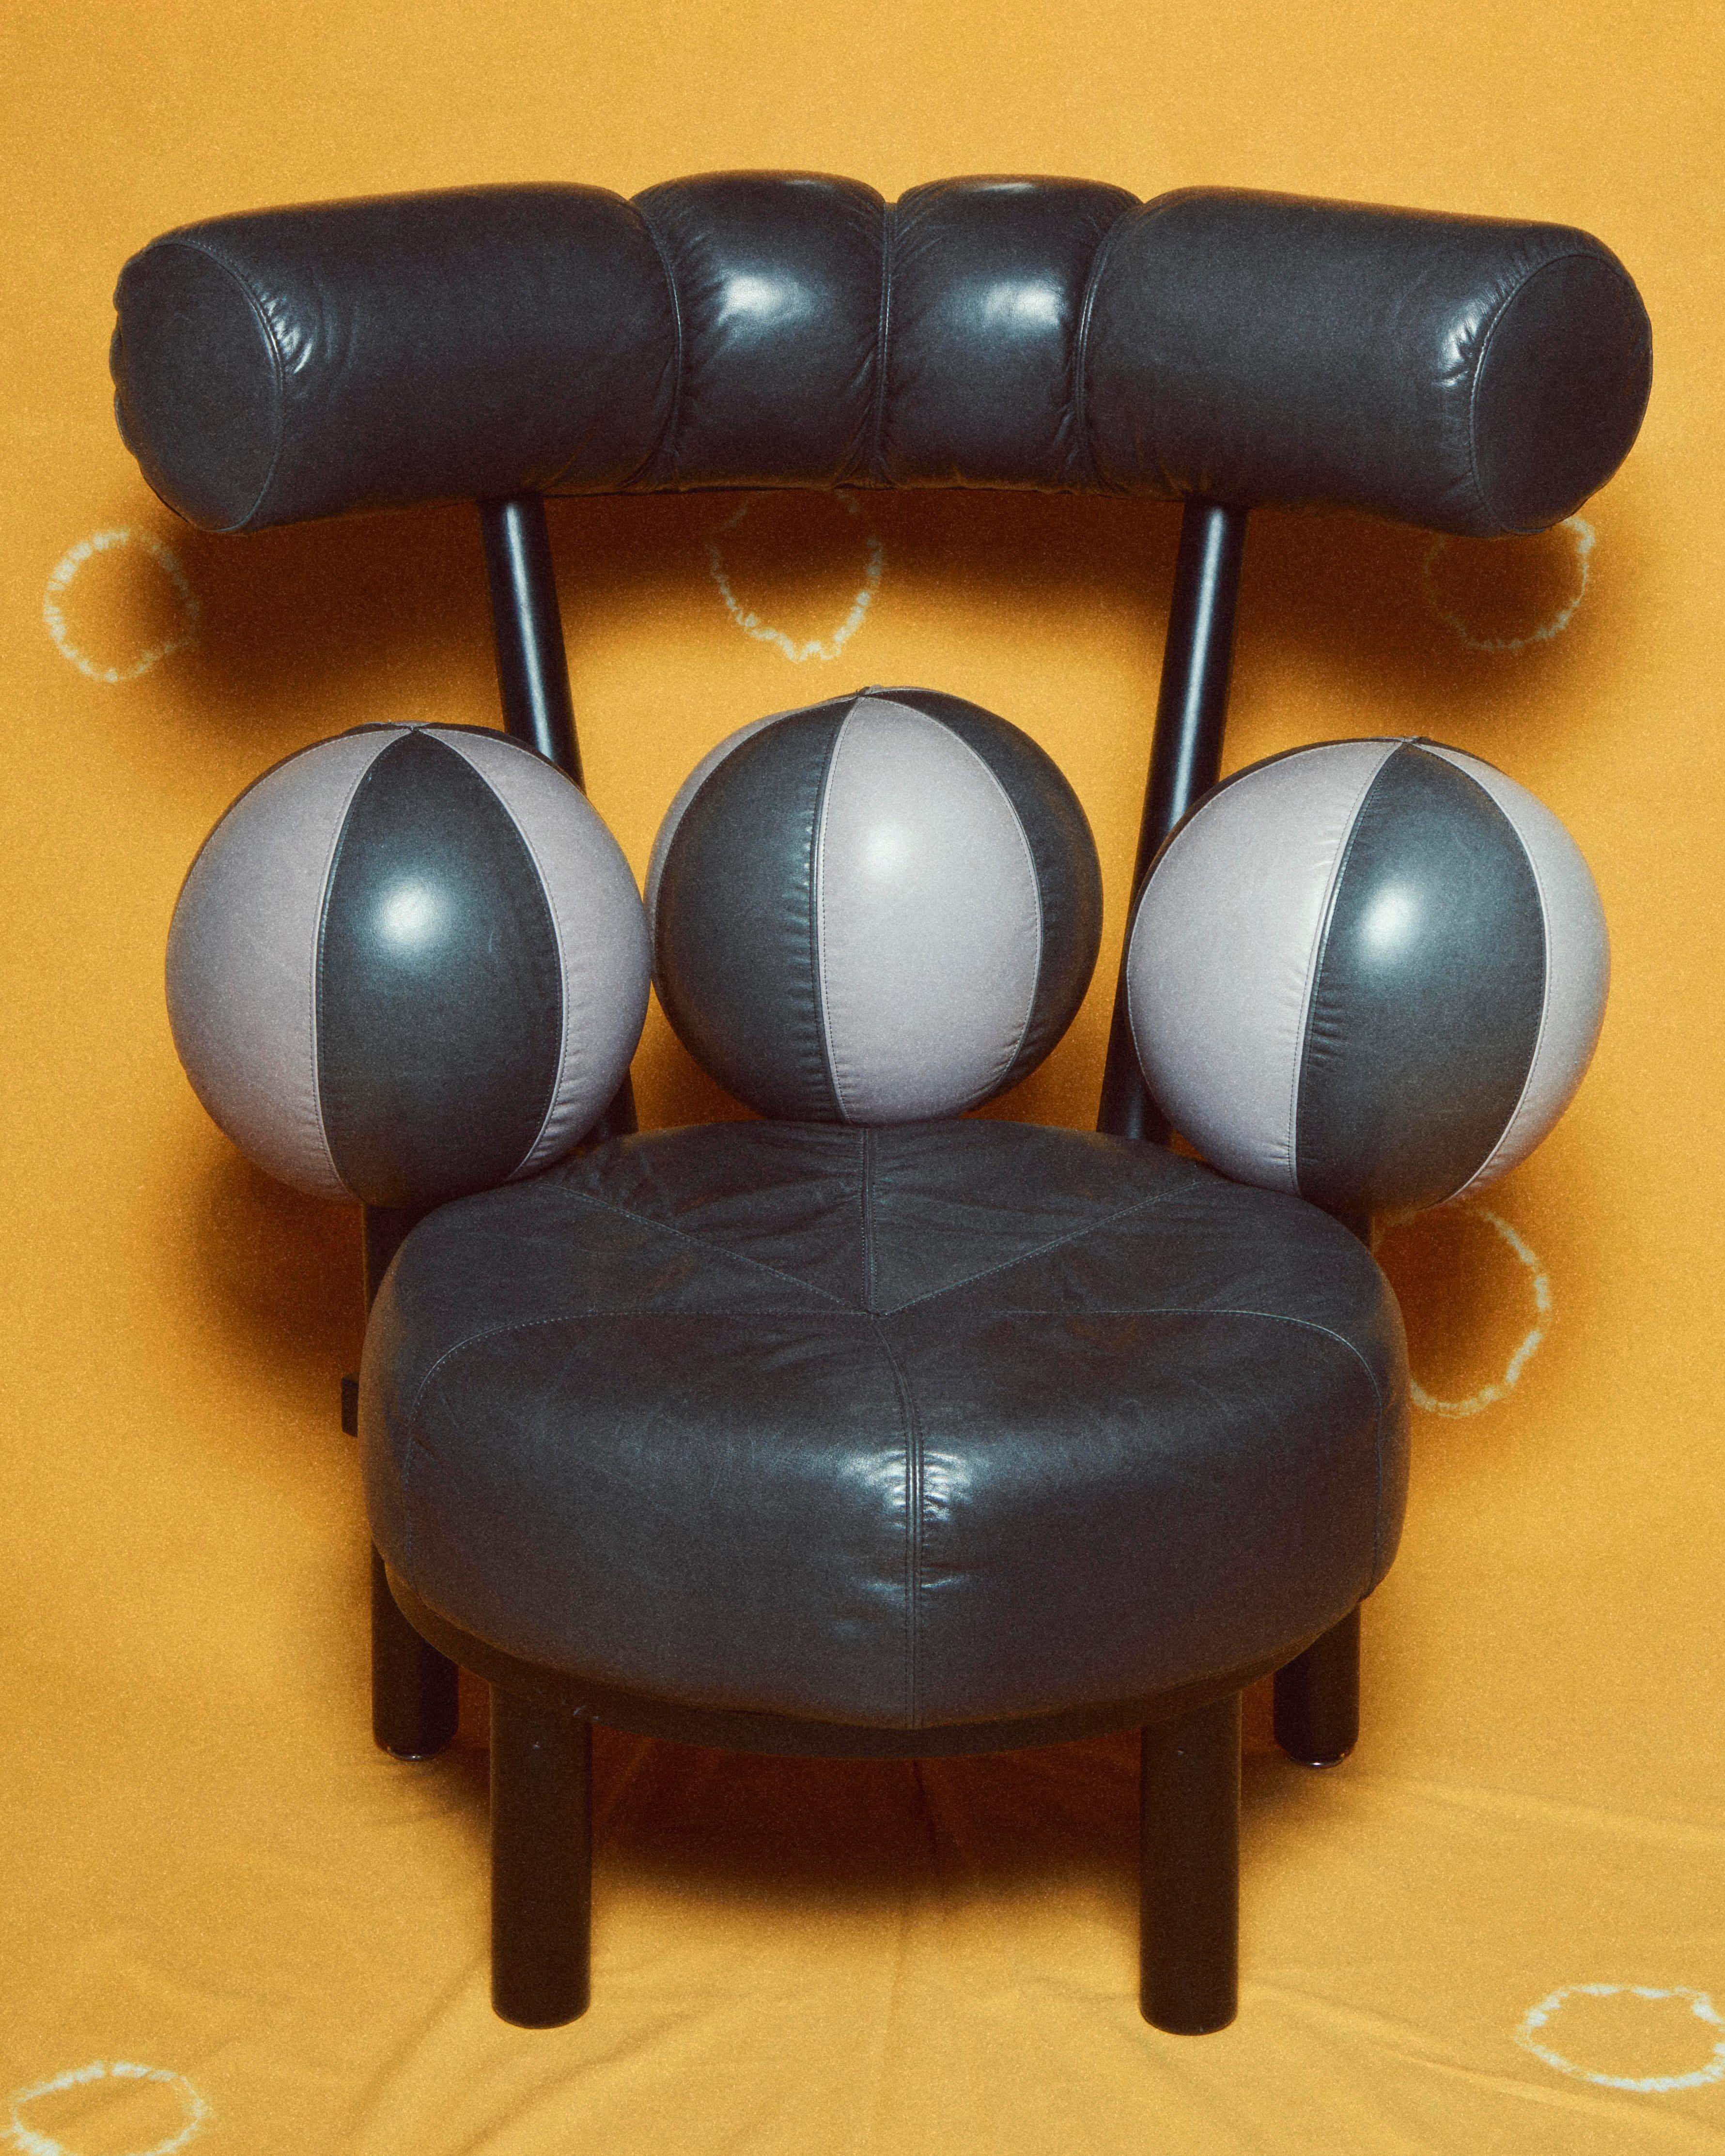 Superbe paire de chaises longues Globe post-moderne de Peters Opsvik pour Stokke Mobler, Norvège, circa 1980

Peut être vendu avec un canapé 3 places assorti.